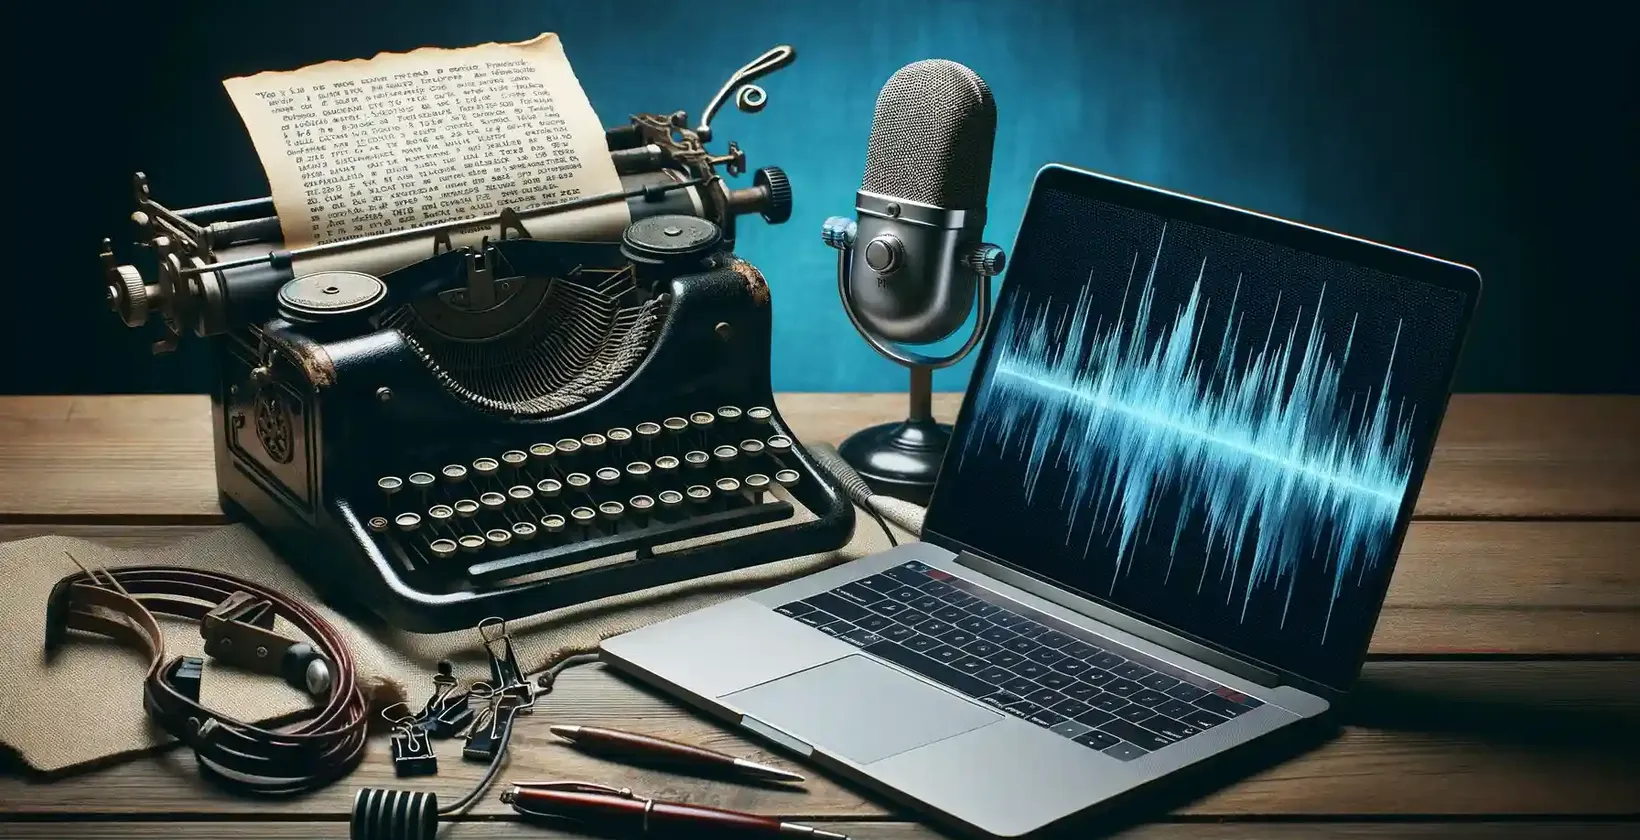 Logiciel de transcription pour écrivains représenté par une machine à écrire ancienne, un texte dactylographié, un microphone et un ordinateur portable.